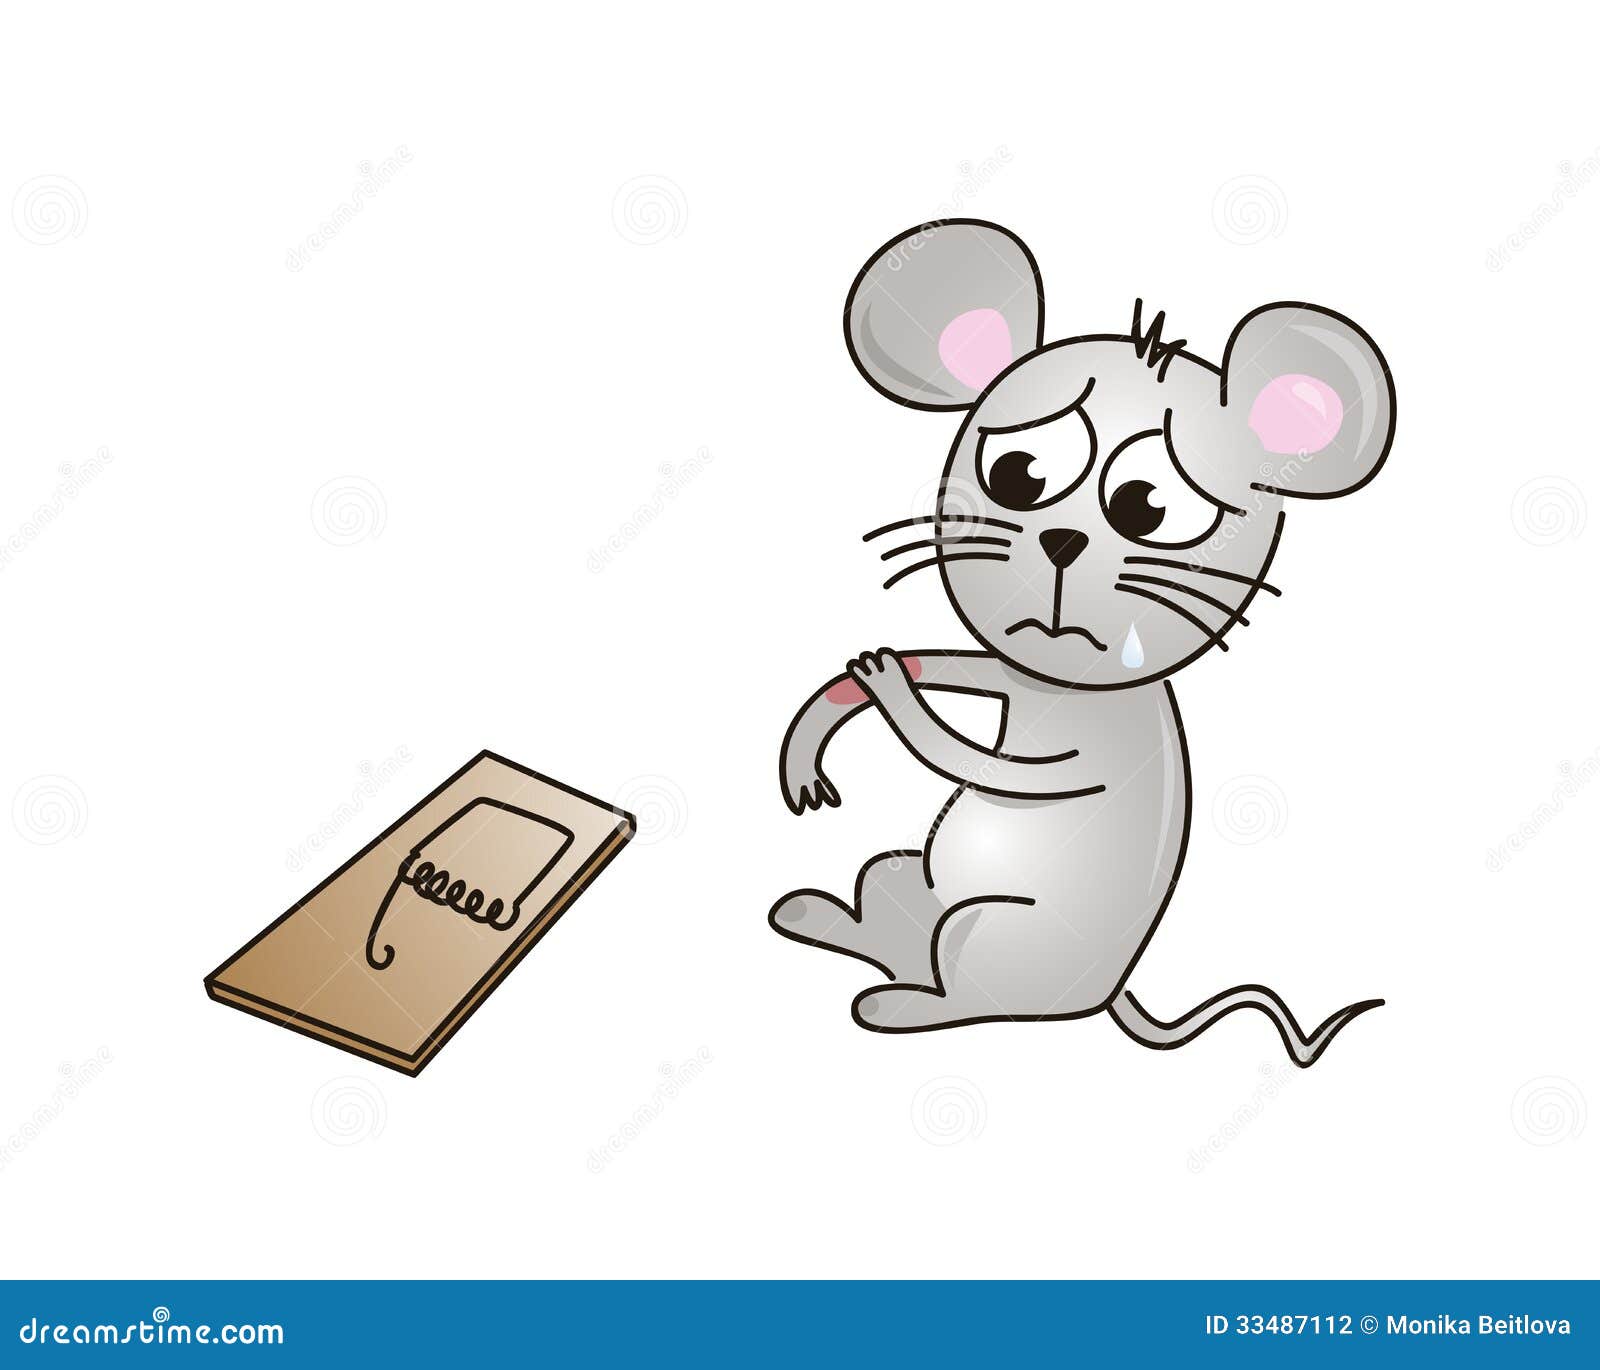 clipart mouse trap - photo #33